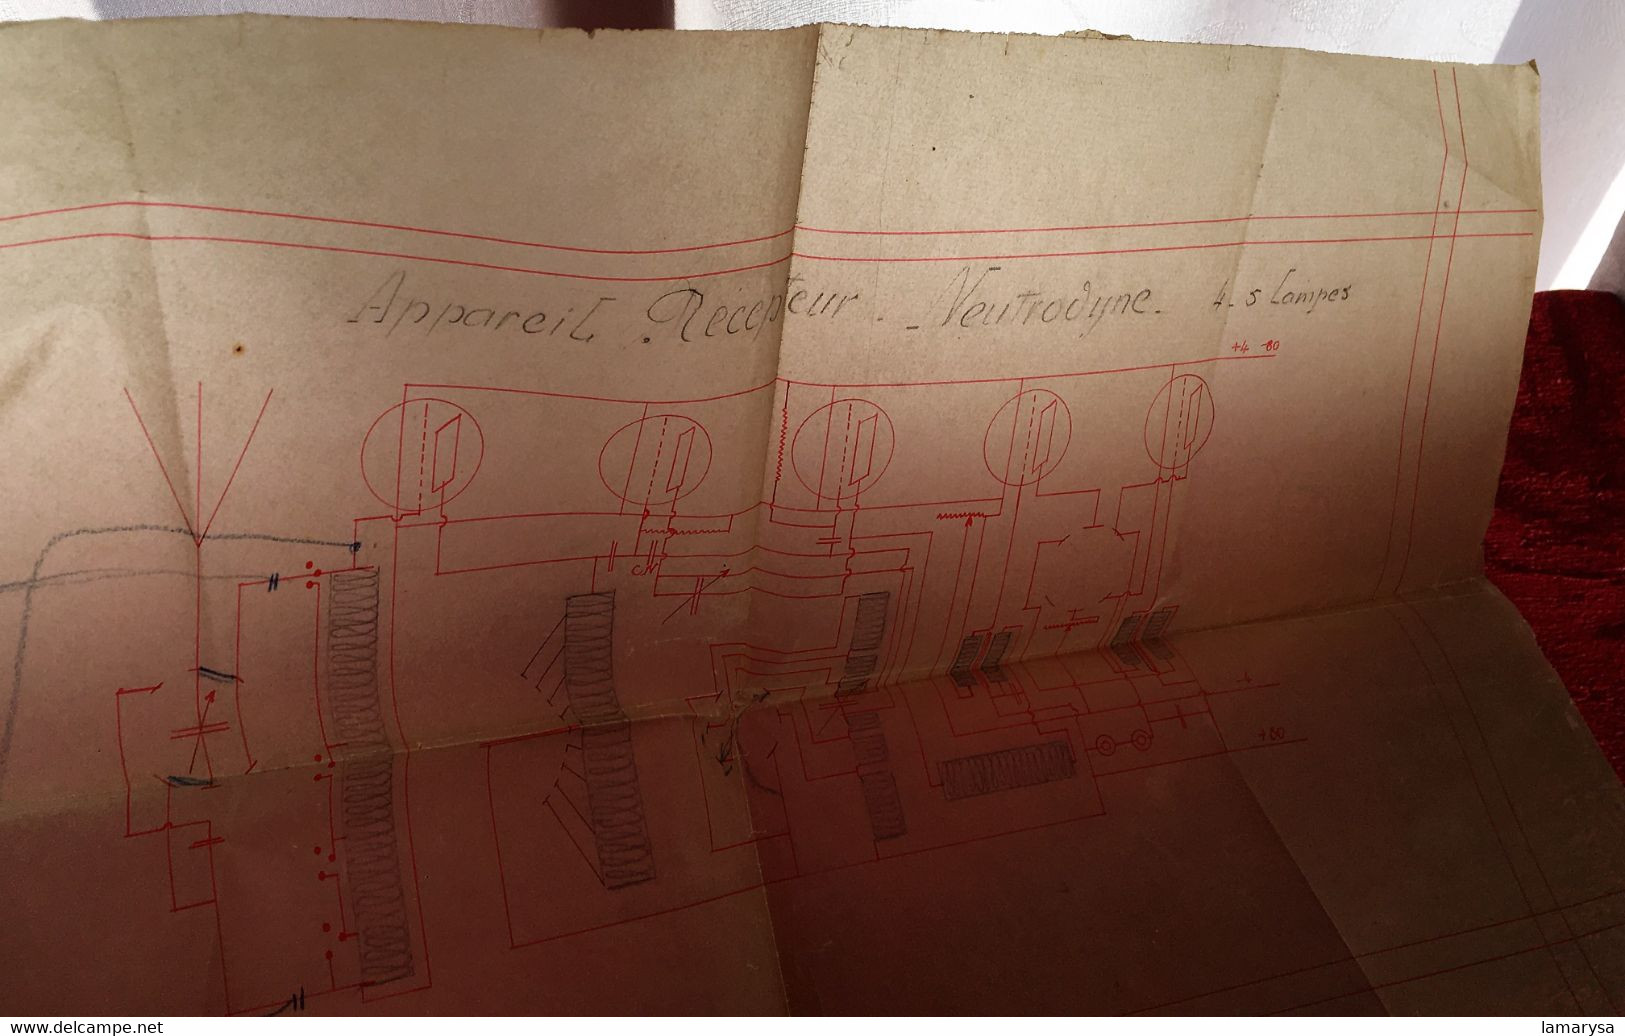 Appareil Récepteur Réactance Neutrodyne 4 /5 Lampes Science & Technique Radio & TSF  Plan En Transparent Décalque--1930 - Libri & Schemi